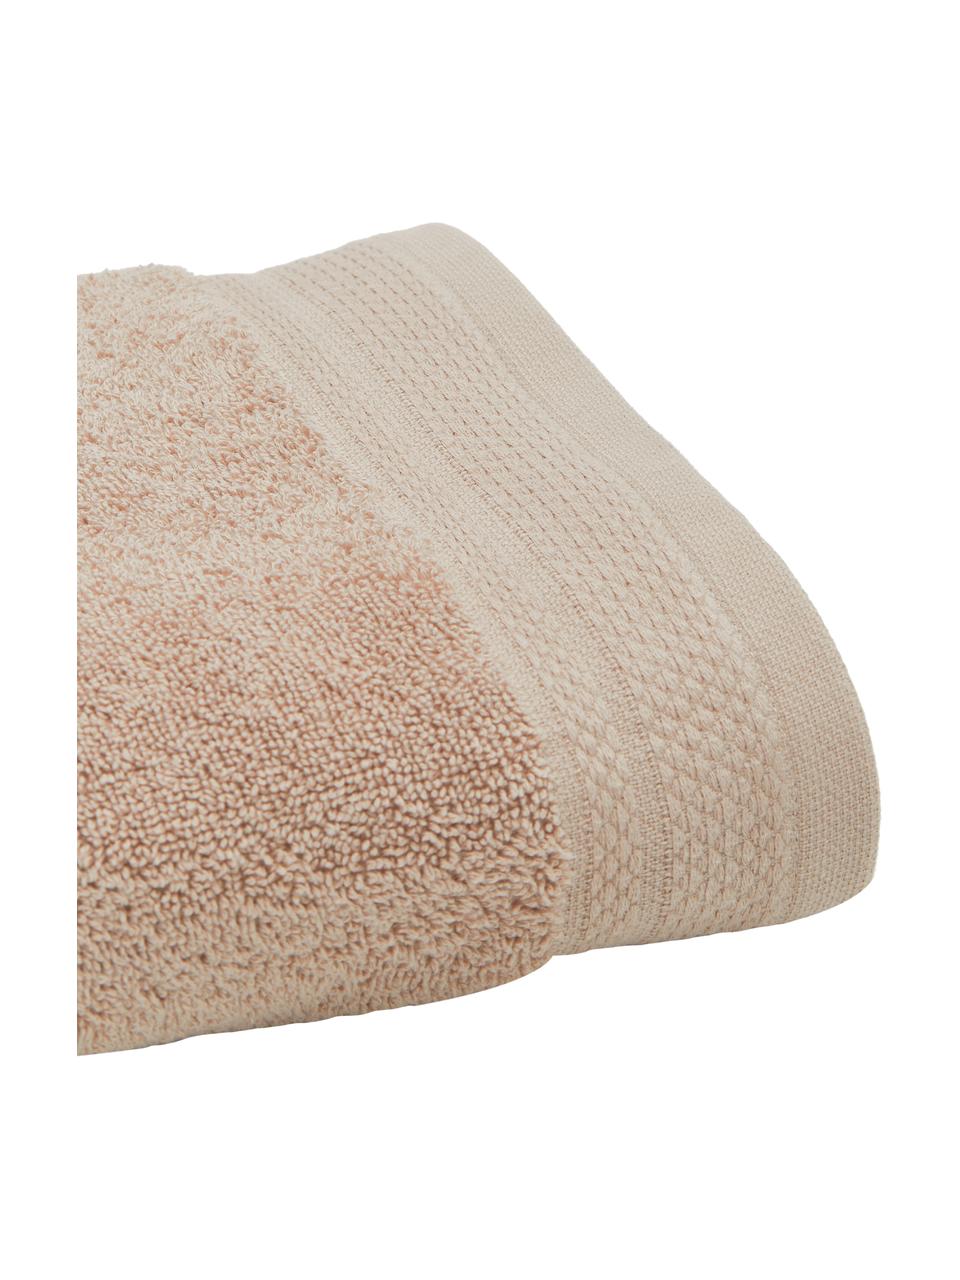 Set 3 asciugamani con bordo decorativo classico Premium, 100% cotone biologico, certificato GOTS
Qualità pesante, 600 g/m², Taupe, Set in varie misure